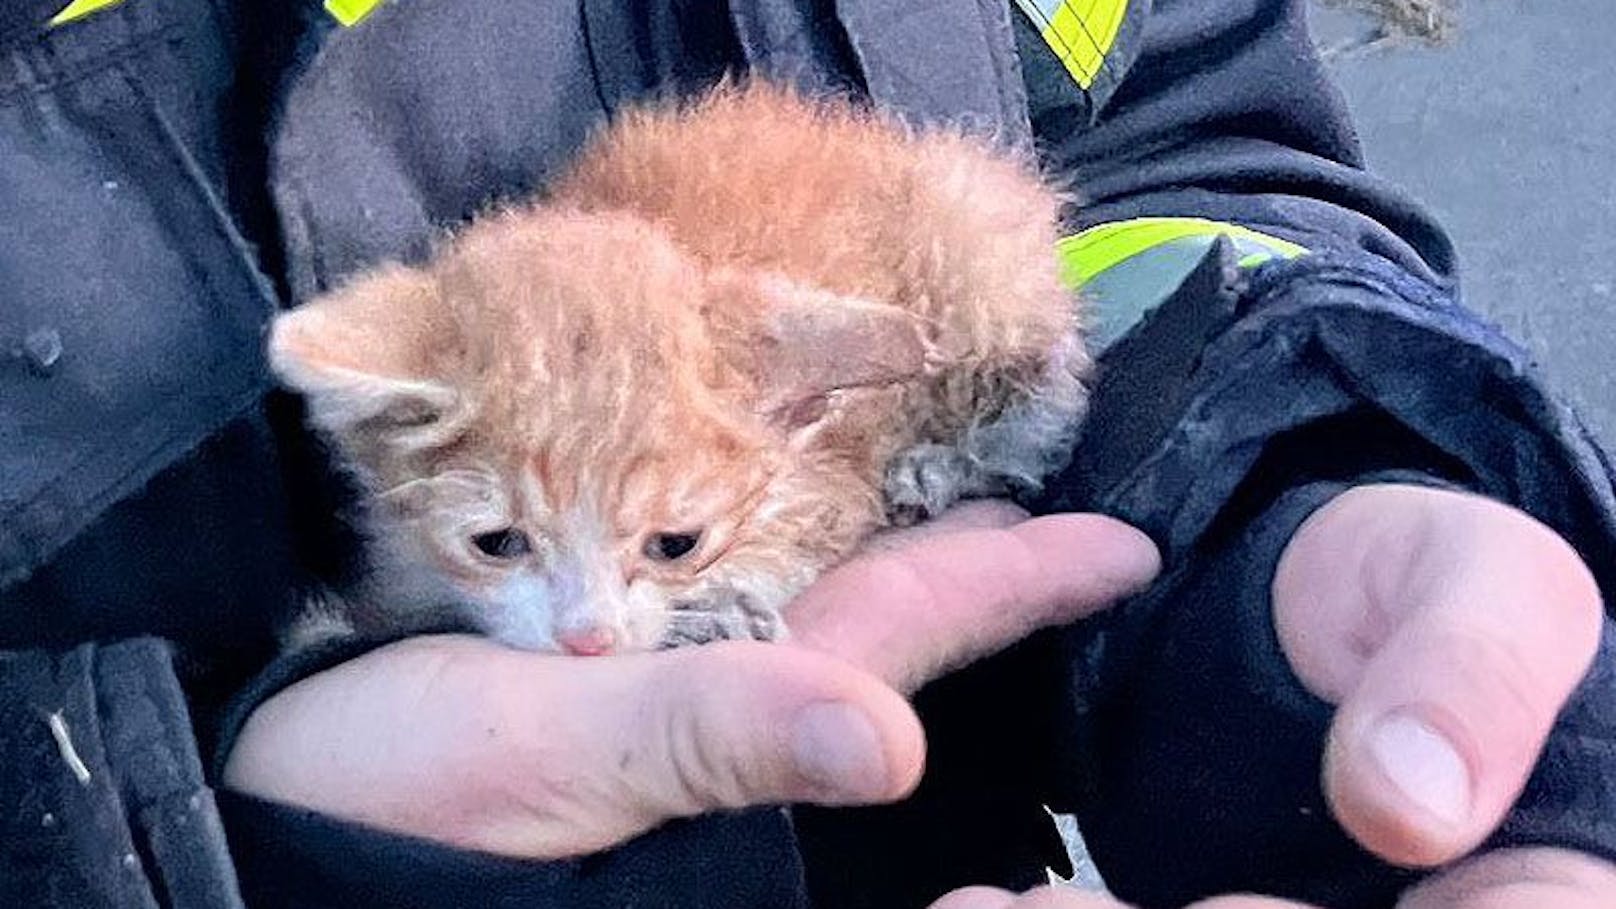 Verwaistes Kätzchen bei großem Brand gerettet